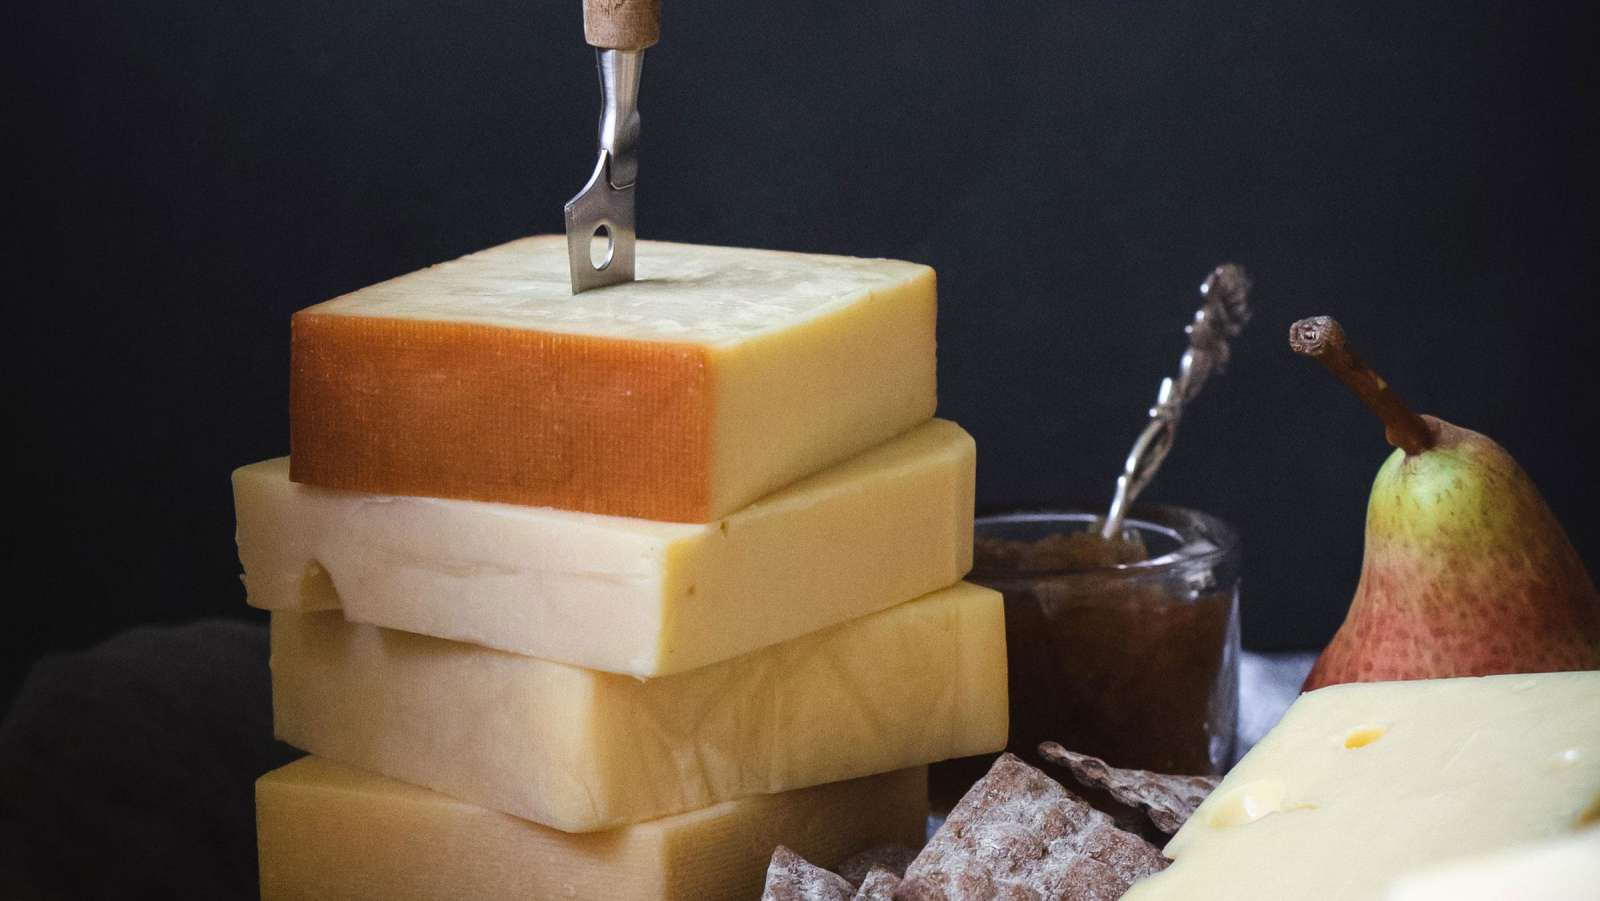 Juuston makuun ja olemukseen vaikuttavat maidon ominaisuudet ja sen käsittely. Eri juustolajien kypsytysajatkin vaihtelevat.